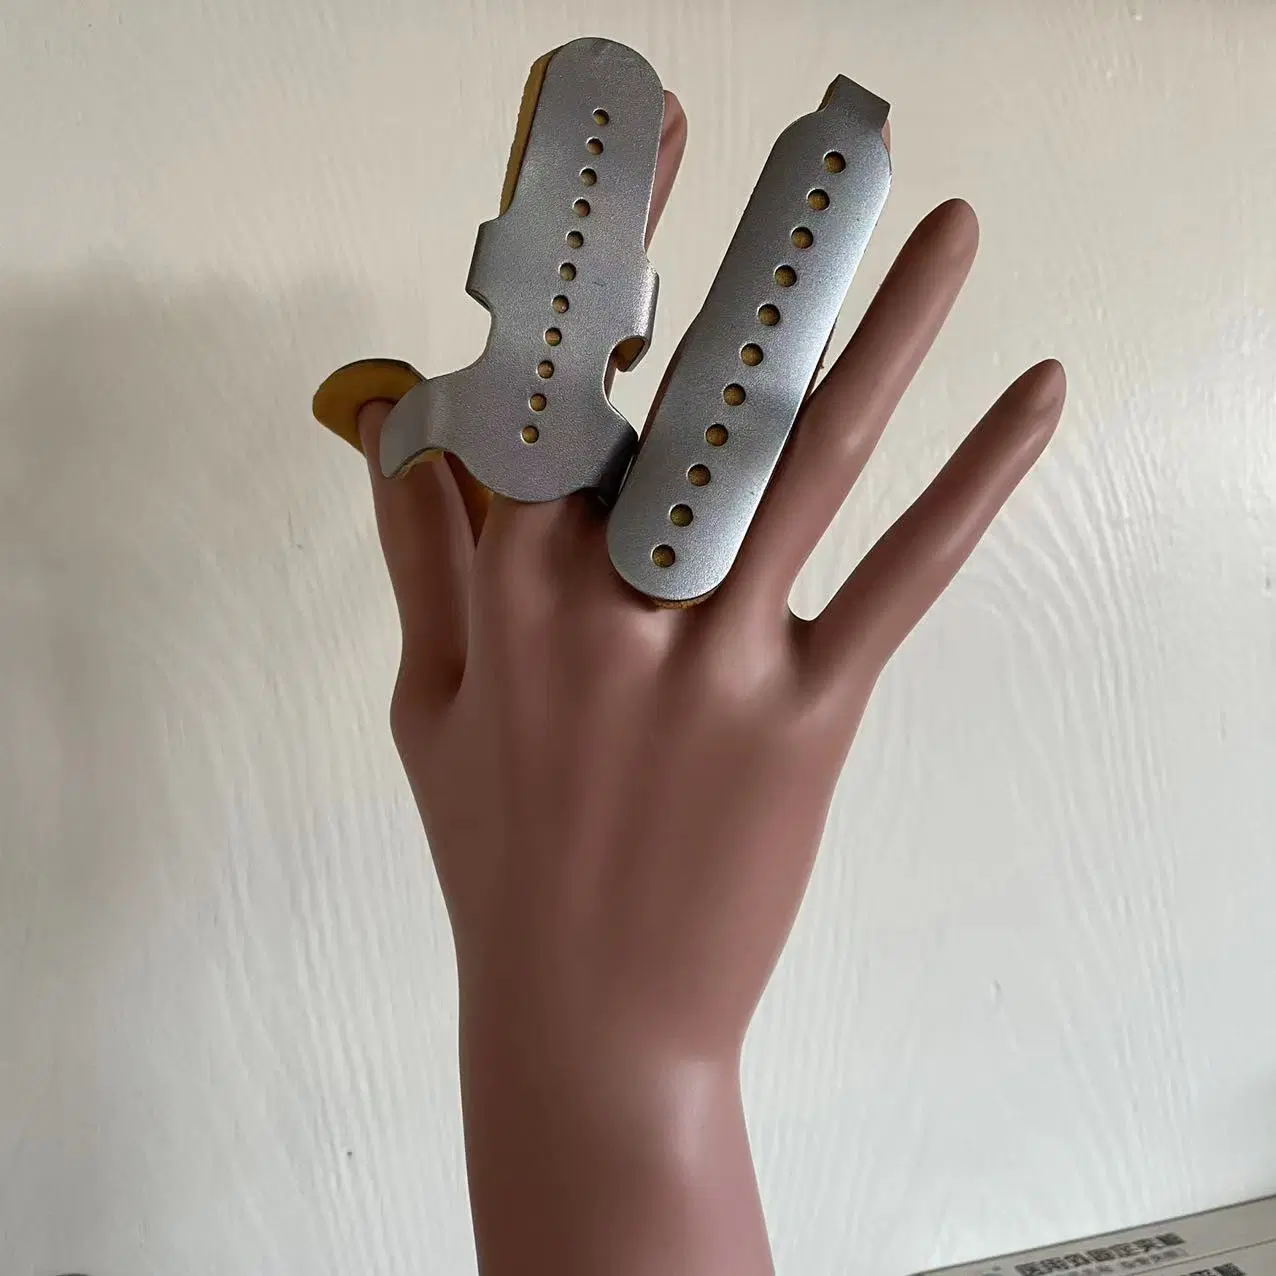 Fingerschiene Formbar Kunststoff Handschiene Schmerzlinderung Fingerstütze